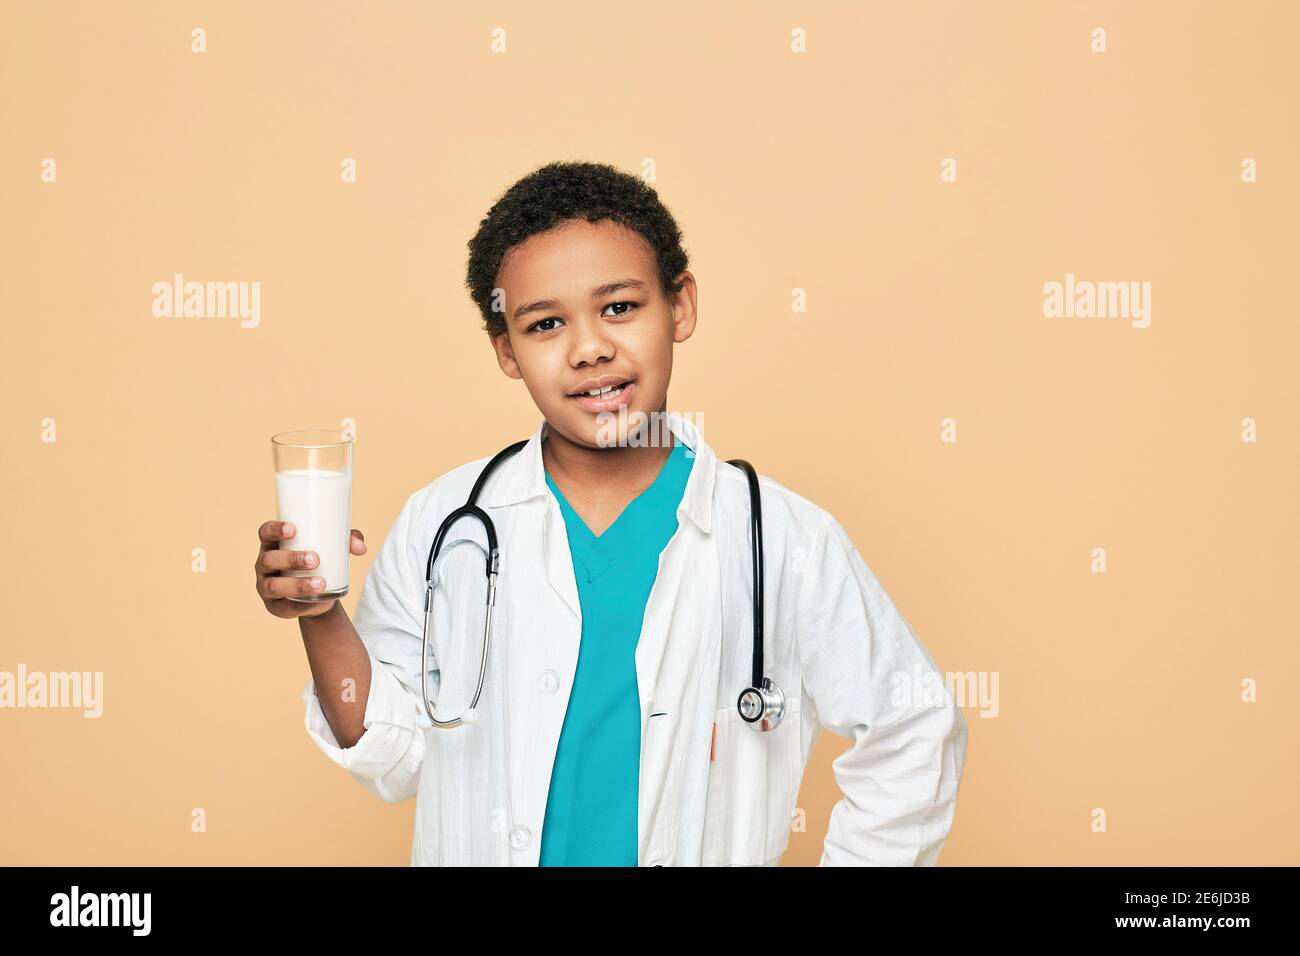 Vorteile von Milch für Kinder. Afroamerikanisches männliches Kind, gekleidet wie ein Arzt, der ein Glas Milch hält Stockfoto